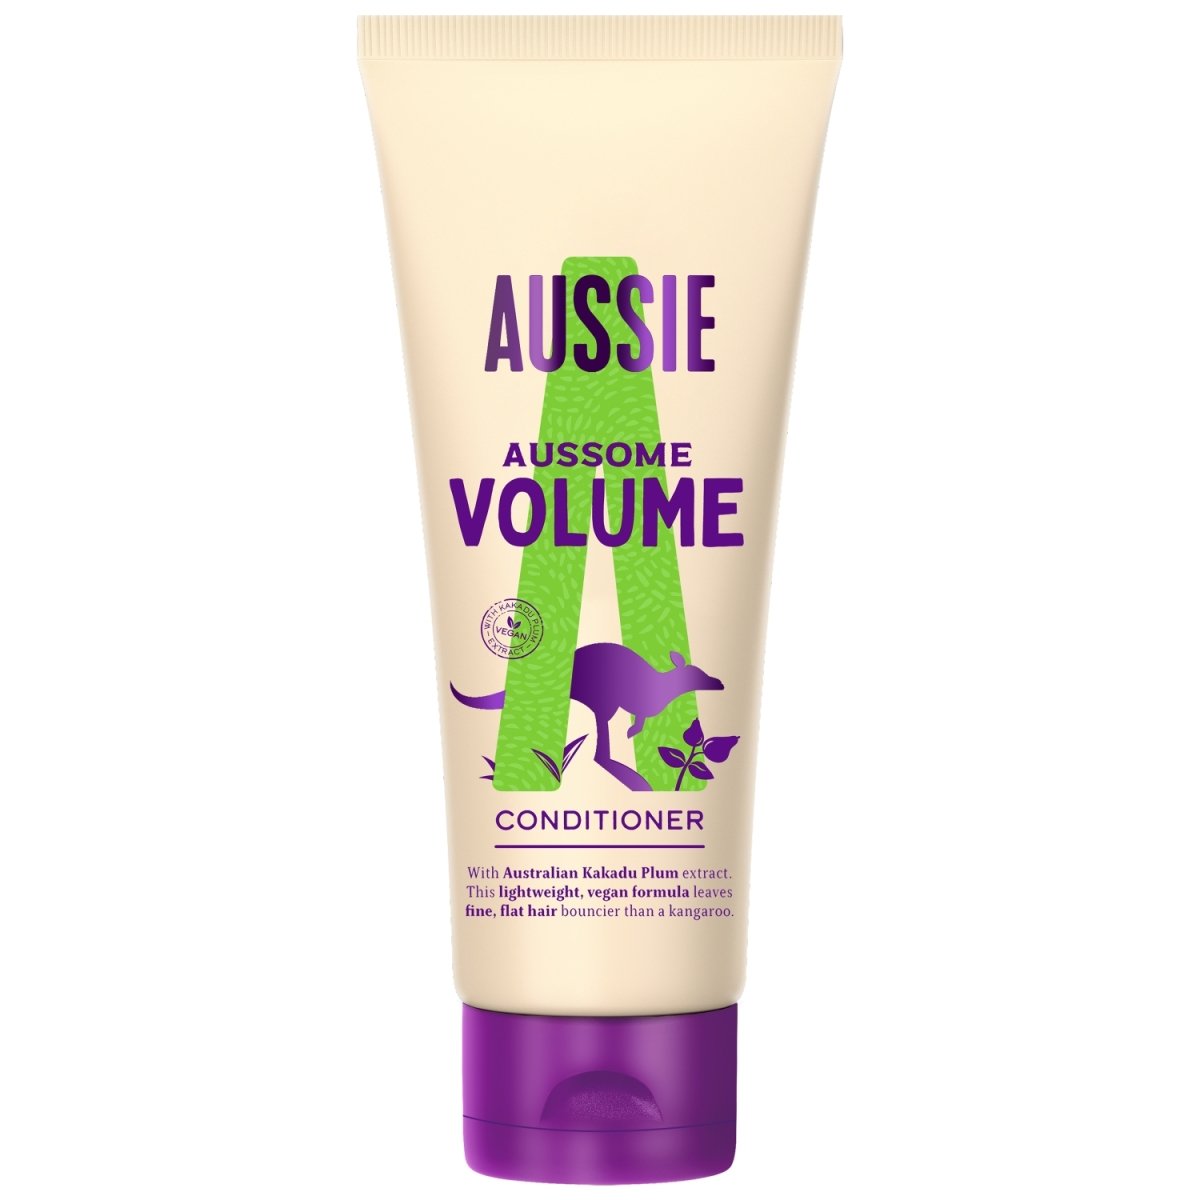 Aussie Conditioner Aussome Volume - Intamarque 8006540109144